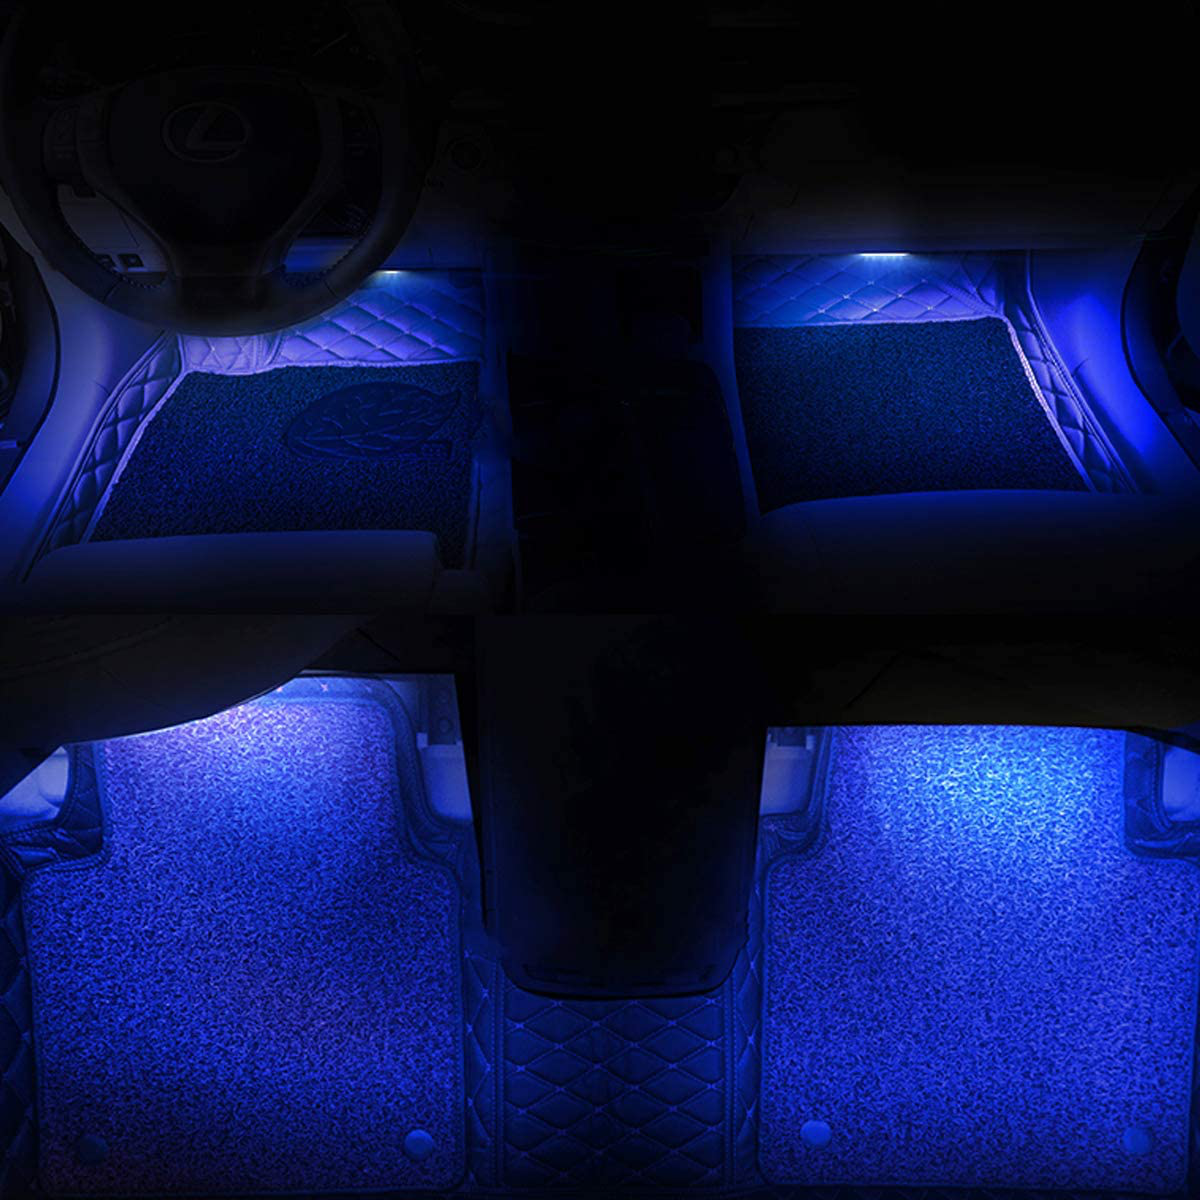 Car LED Strip Light, EJ's SUPER CAR 4pcs 36 LED Car Interior Lights Under Dash Lighting Waterproof Kit,Atmosphere Neon Lights Strip for Car,DC 12V(Blue)